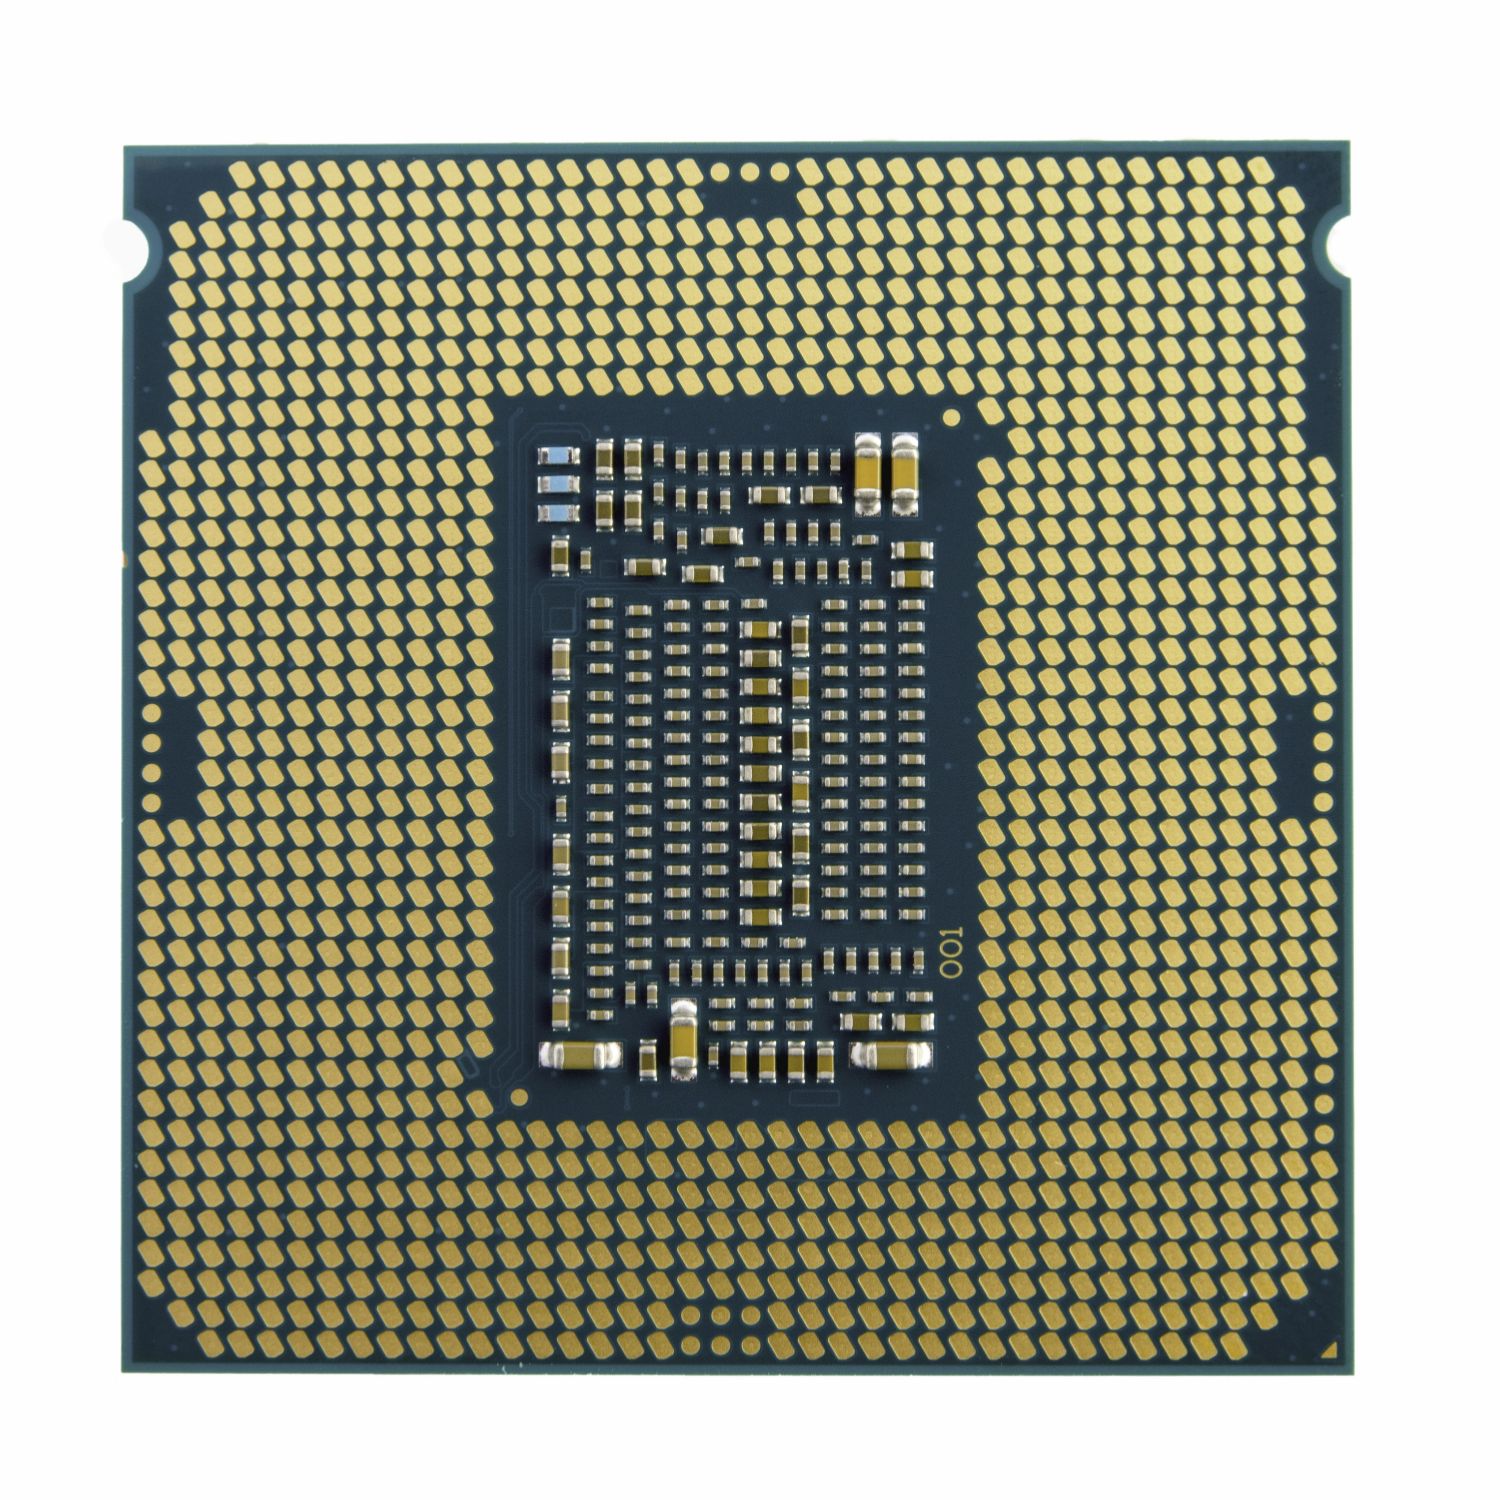 BX8070110900F - Intel Core i9-10900F LGA1200 2.8GHz 20Mb (BX8070110900F)